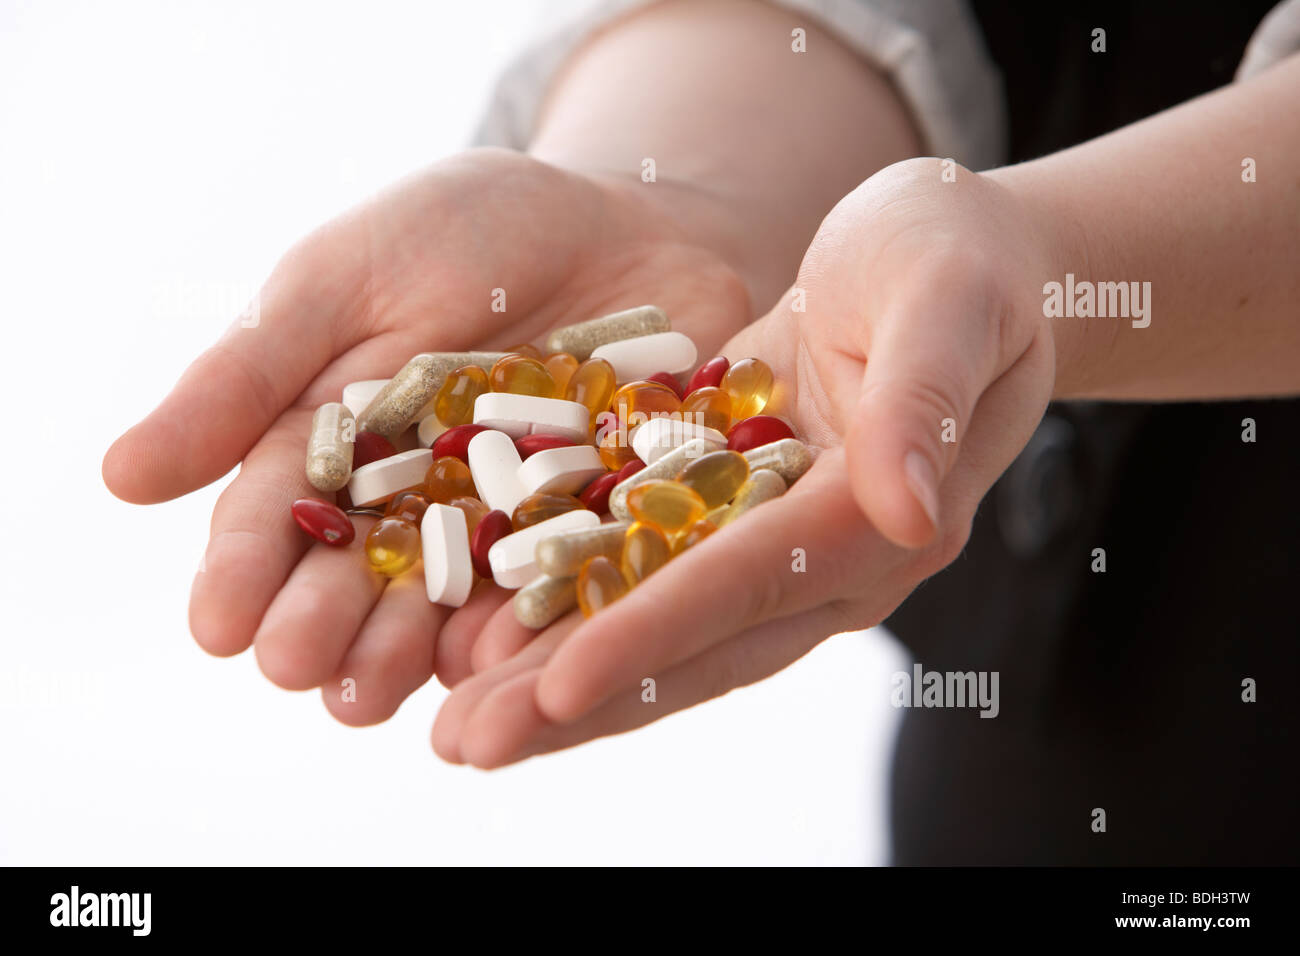 Los jóvenes de 20 años de edad, mujer sosteniendo un puñado de diversos suplementos vitamínicos Foto de stock